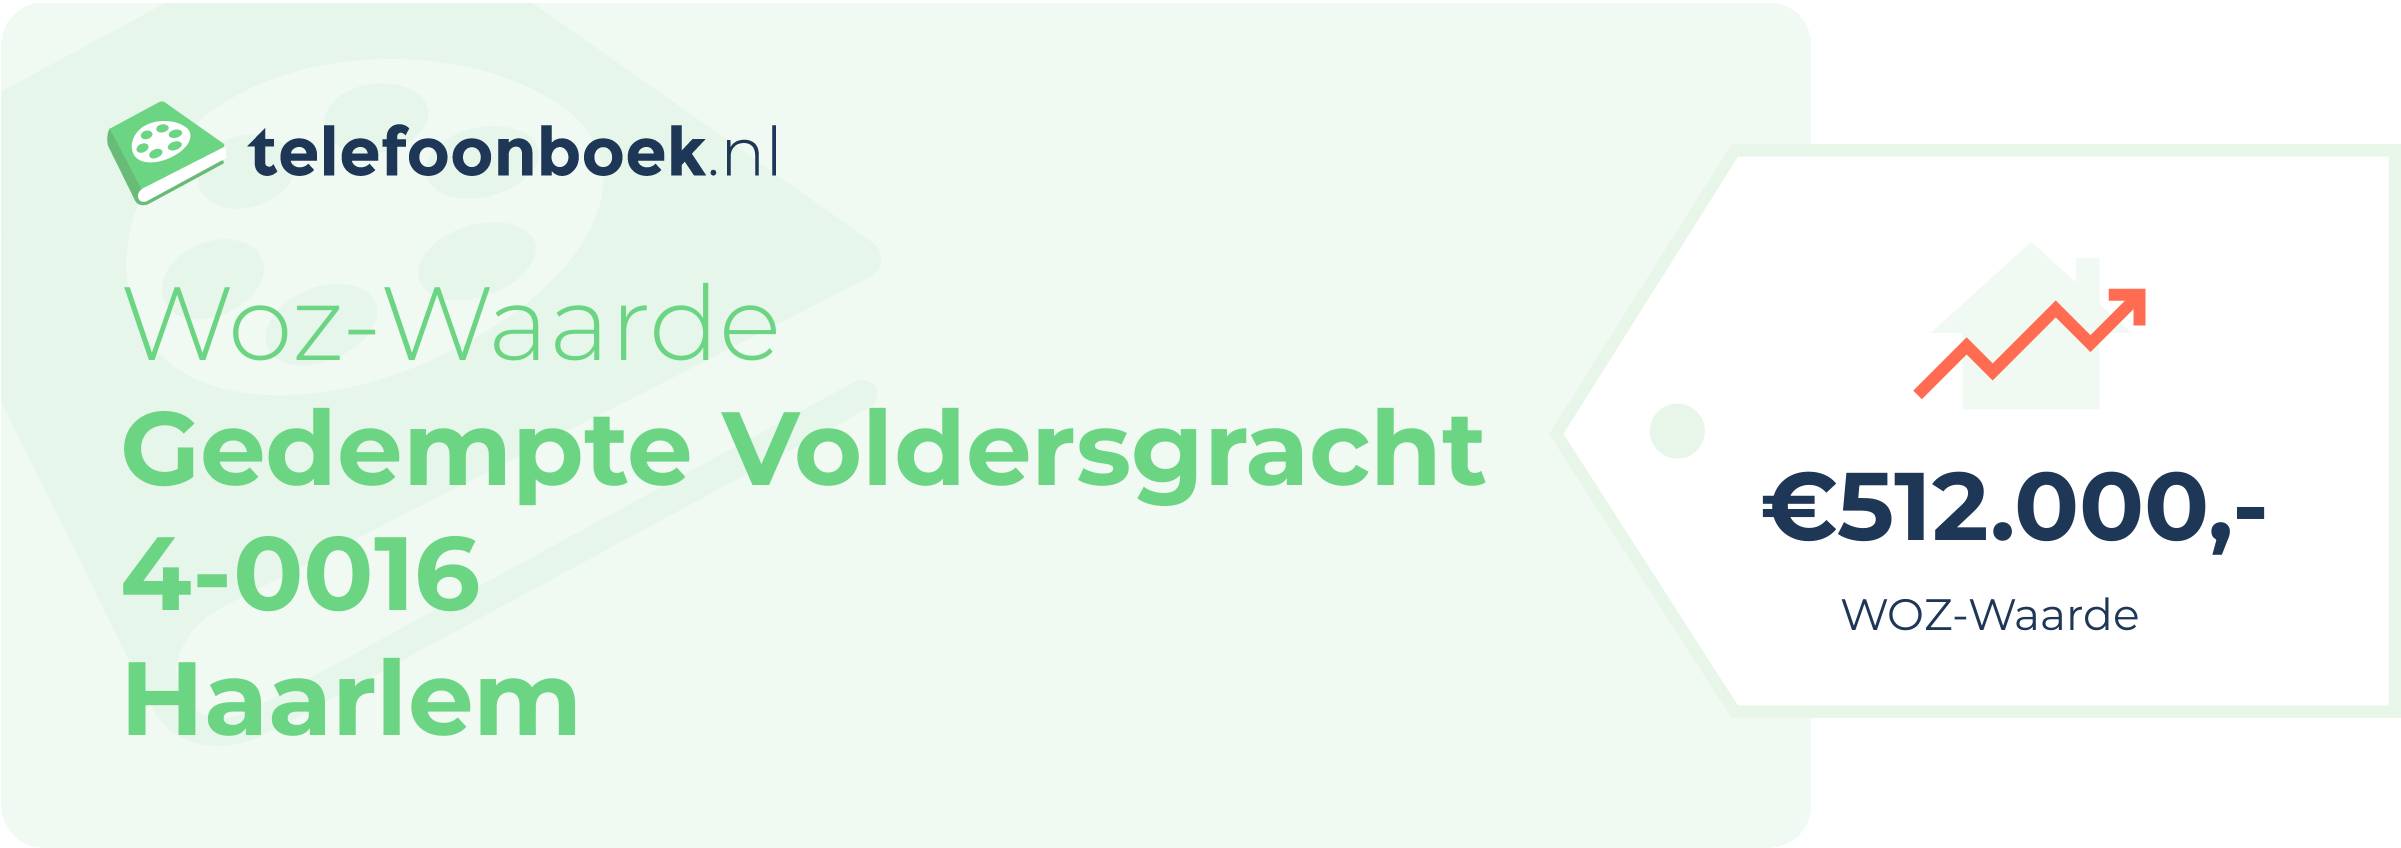 WOZ-waarde Gedempte Voldersgracht 4-0016 Haarlem